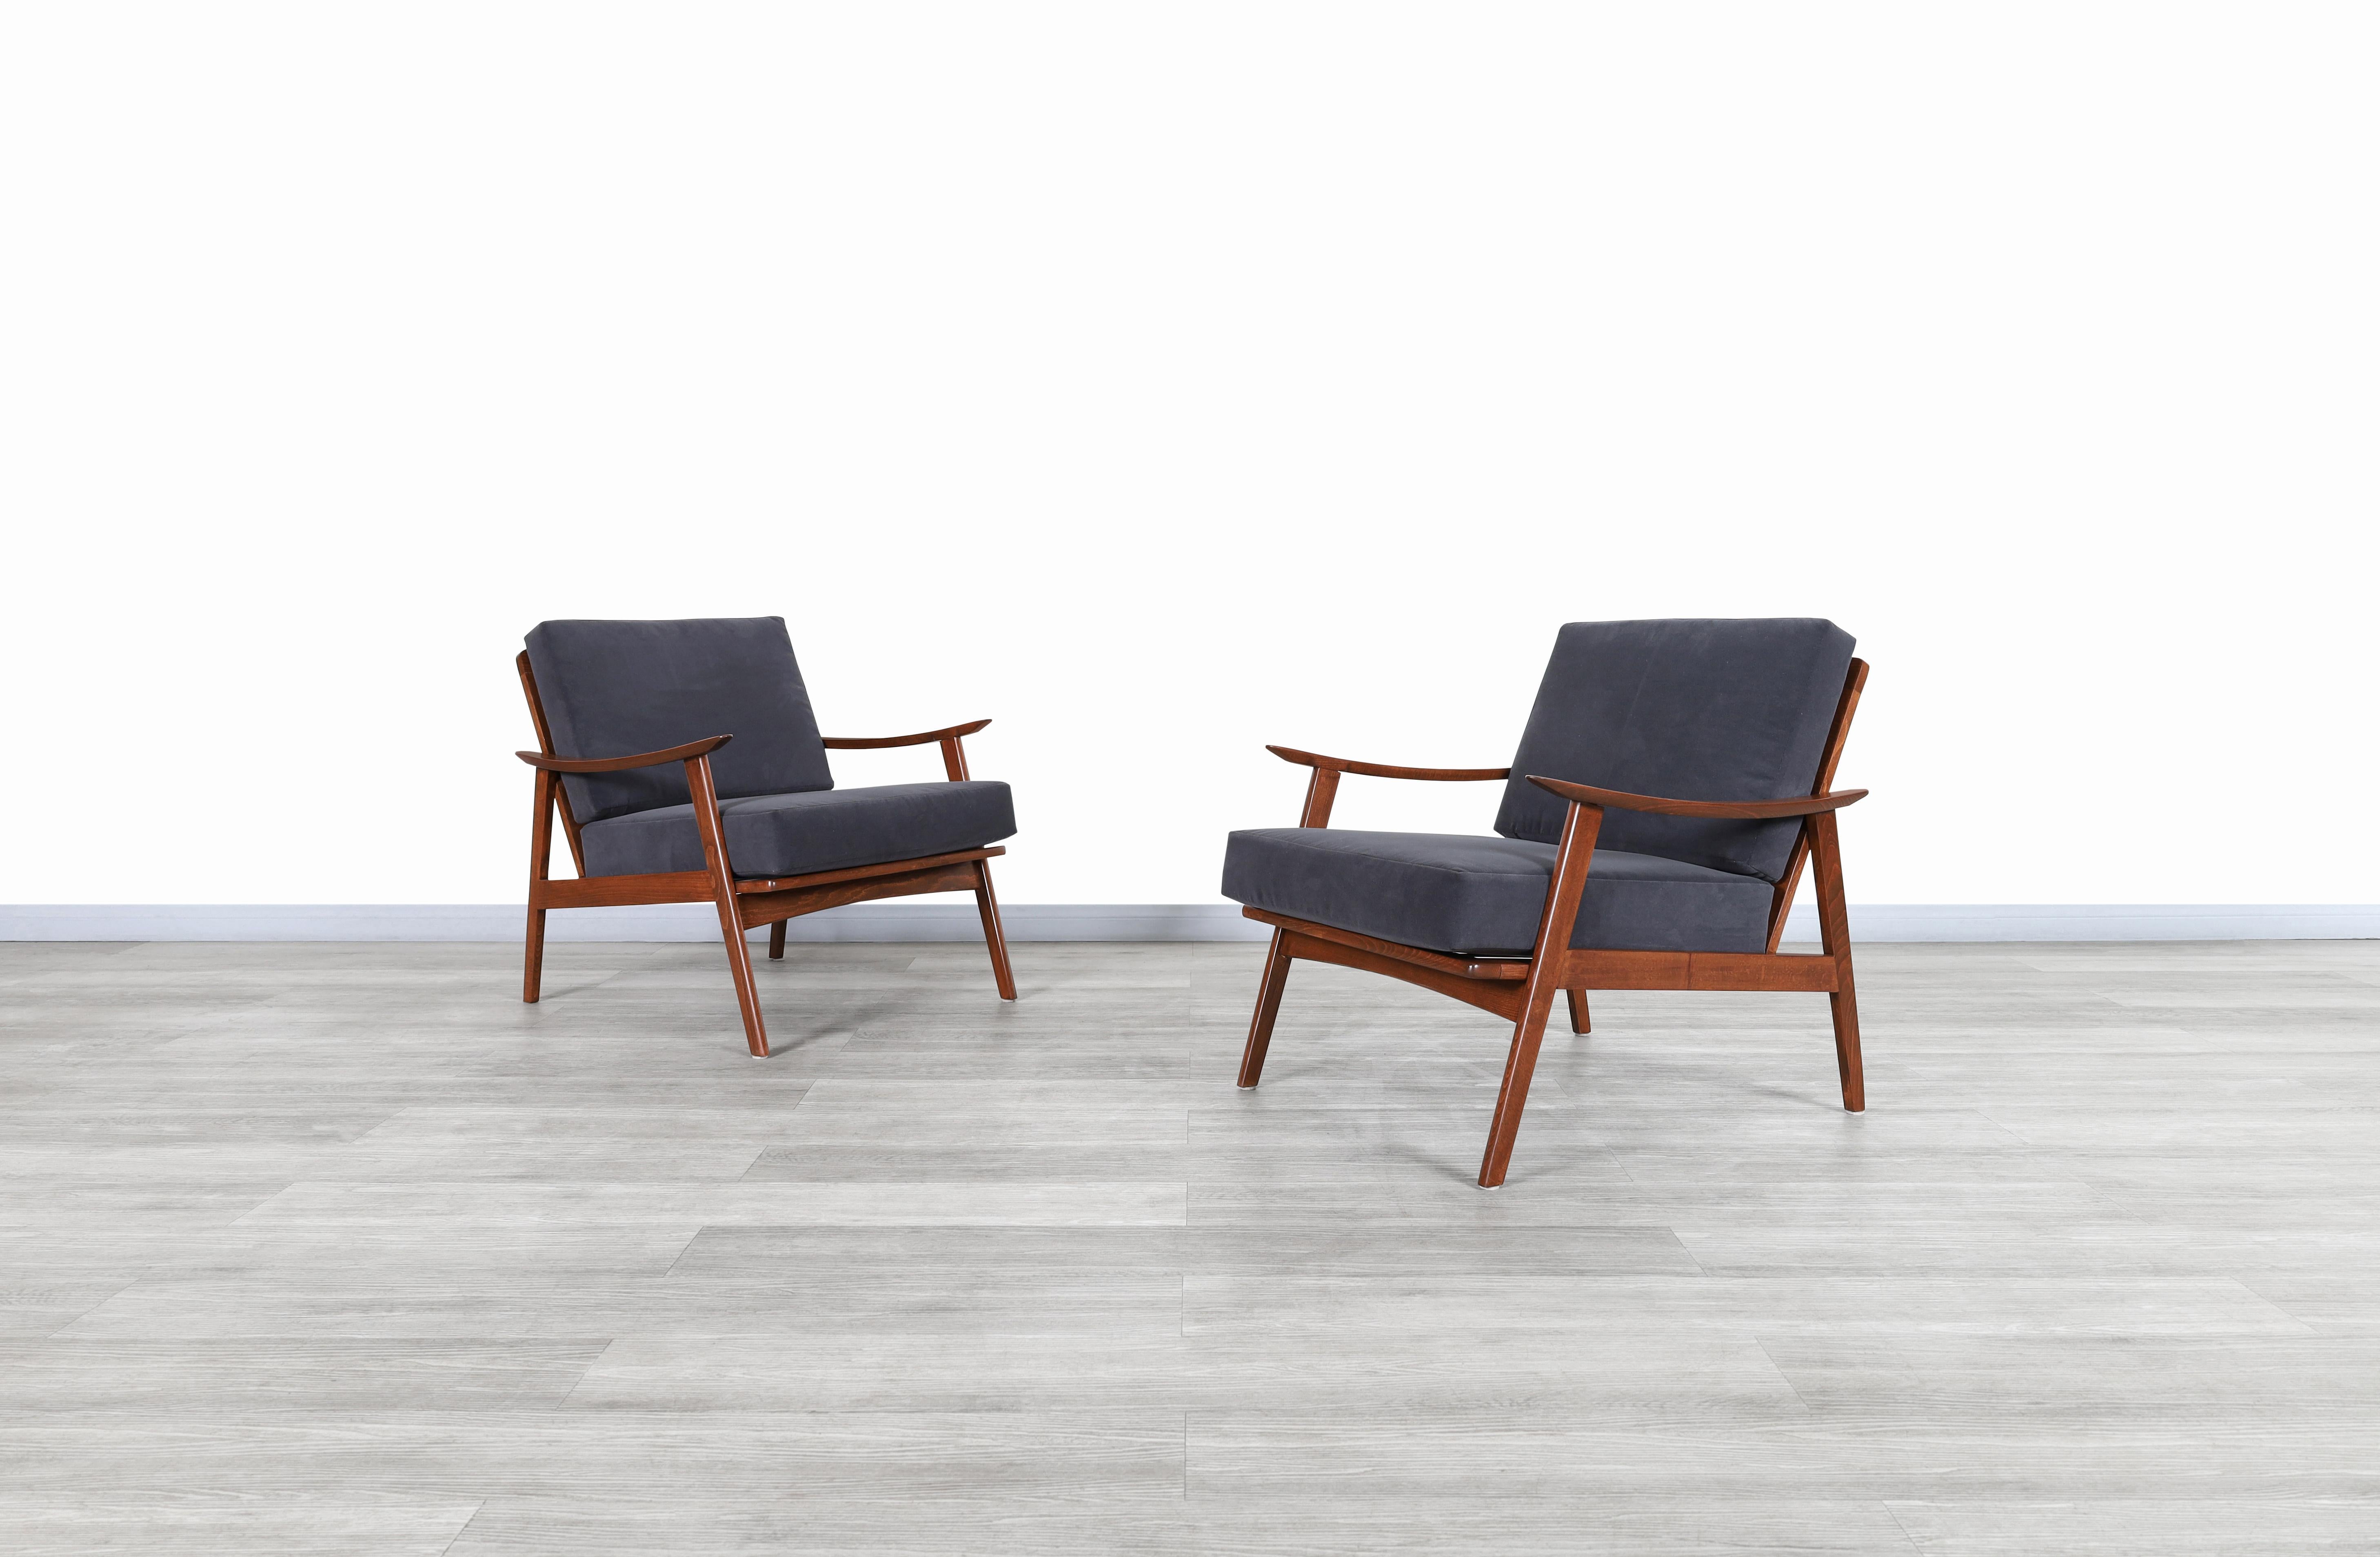 Fabelhafte Mid-Century Modern Nussbaum Lounge Stühle entworfen und hergestellt in den Vereinigten Staaten, circa 1950er Jahre. Diese Stühle haben ein für ihre Zeit sehr charakteristisches Design. Unsere erfahrenen Handwerker haben jeden Stuhl